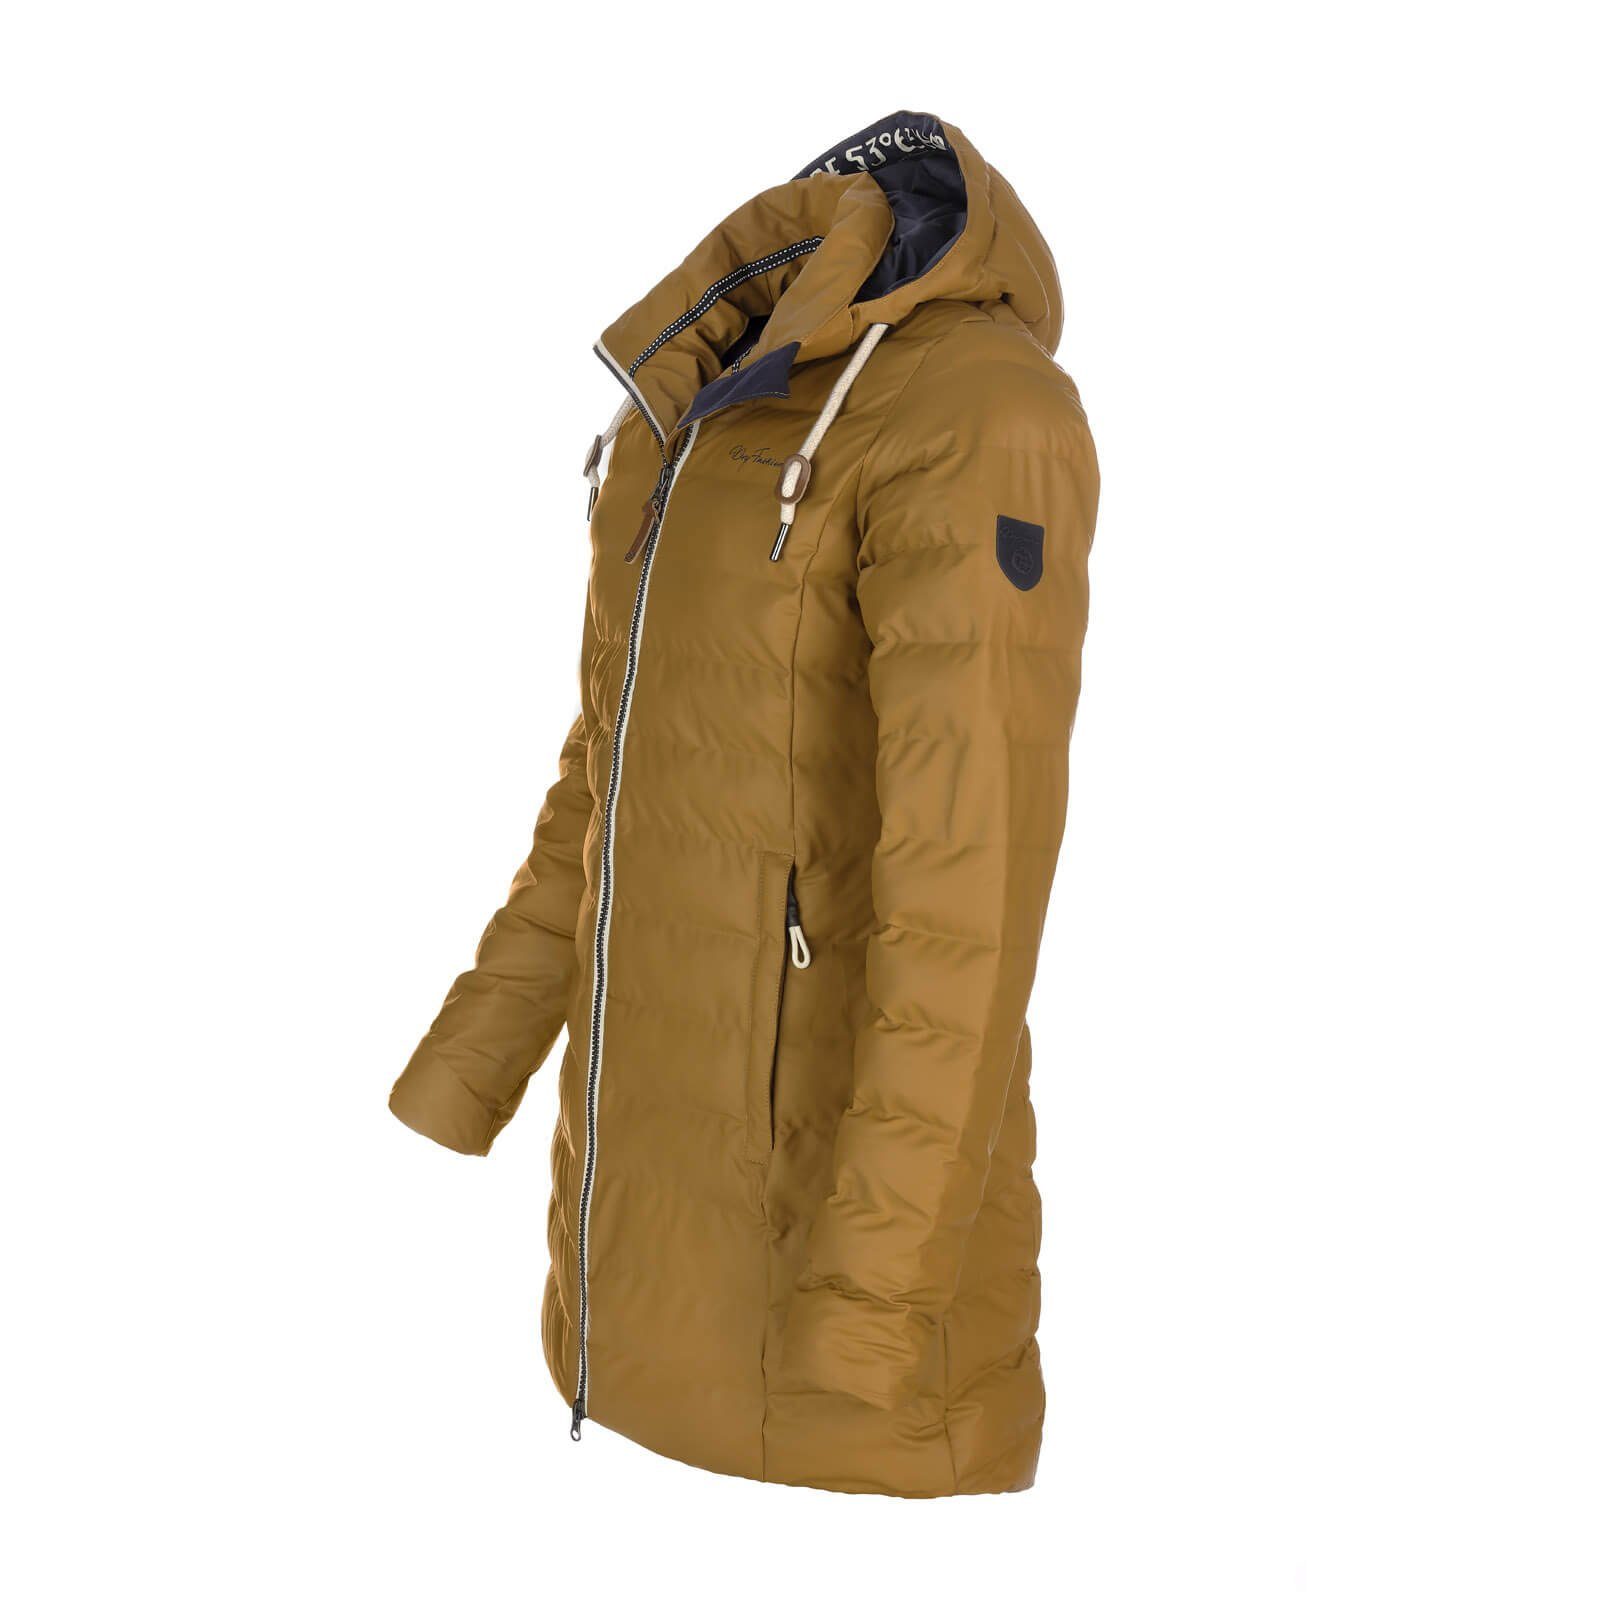 Regenmantel Damen Dry wasserdicht und gesteppt Outdoor-Jacke - Danzig zimt Fashion PU-Mantel wind-